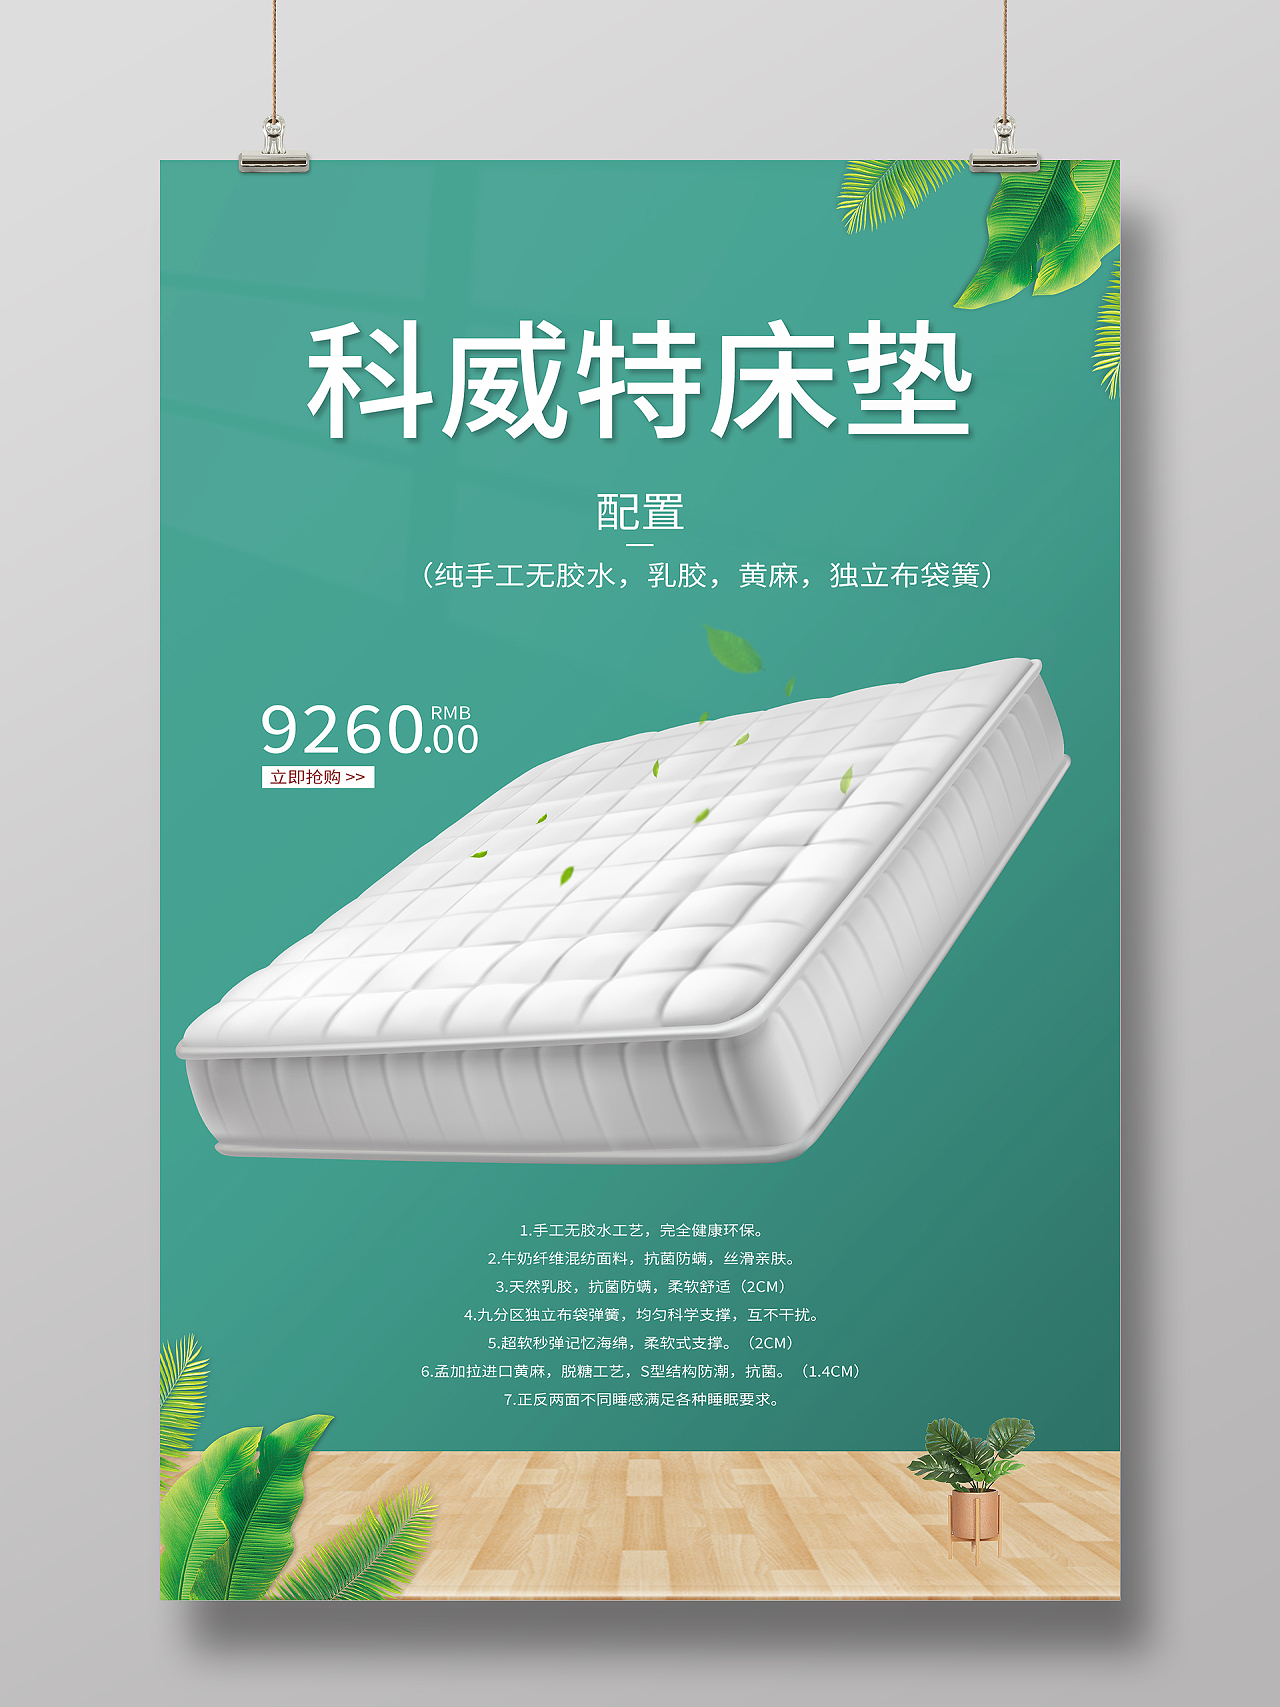 绿色简约清新大气电商床垫海报设计